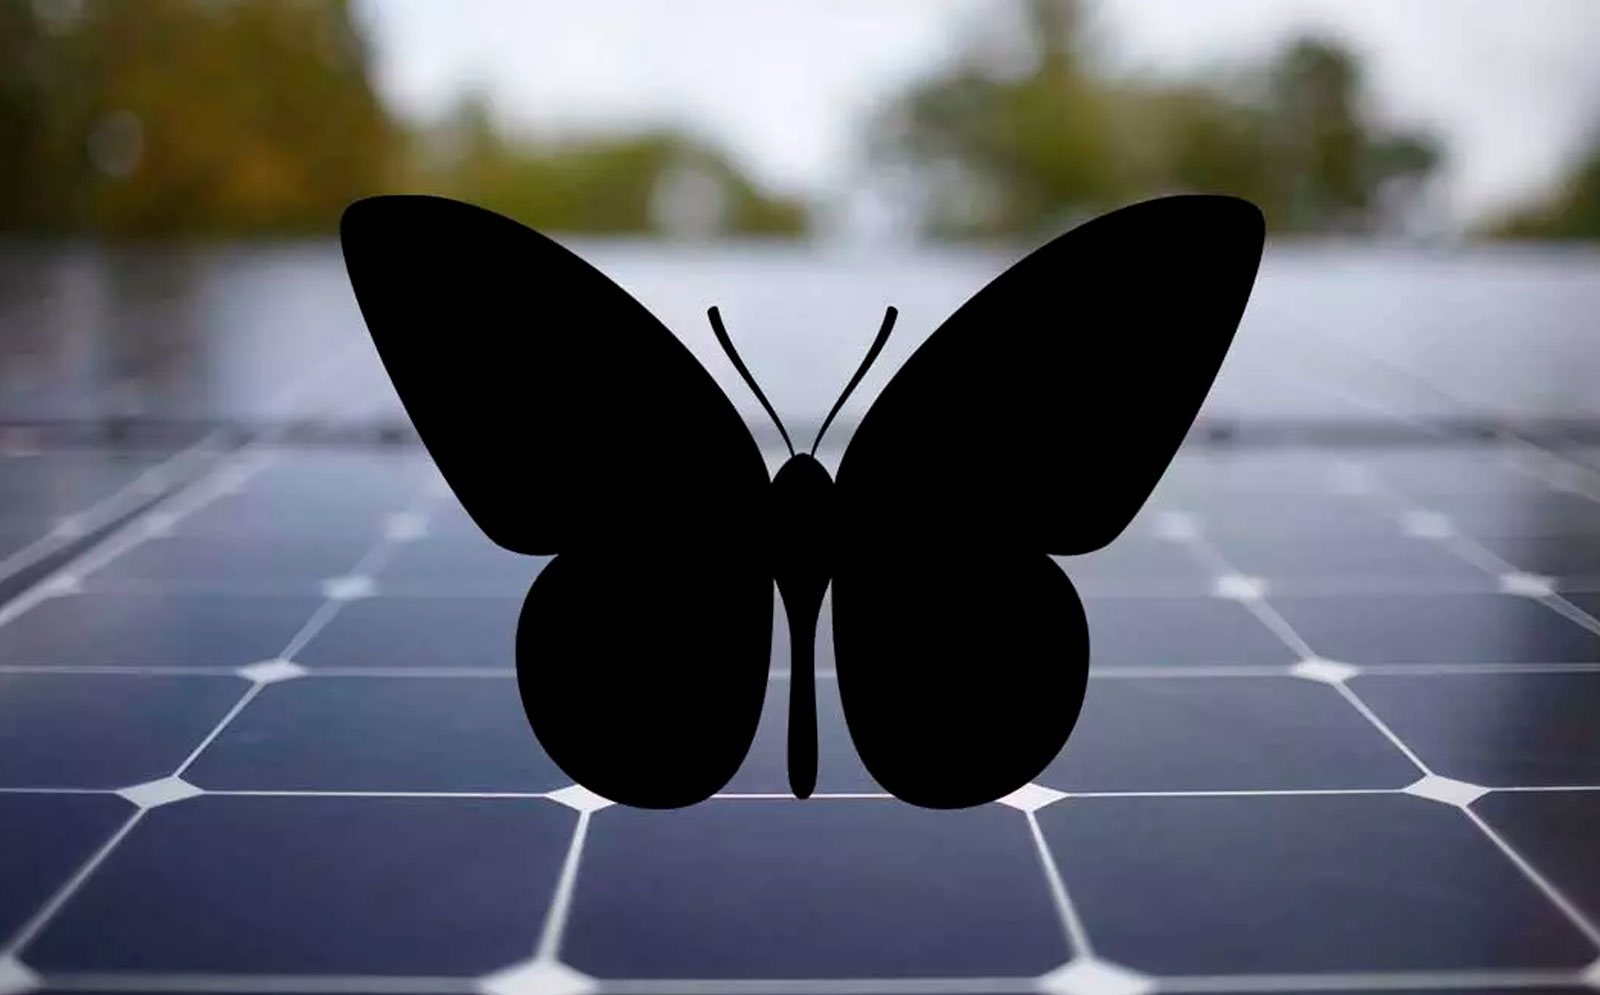 Crean nuevos paneles solares inspirados en mariposas